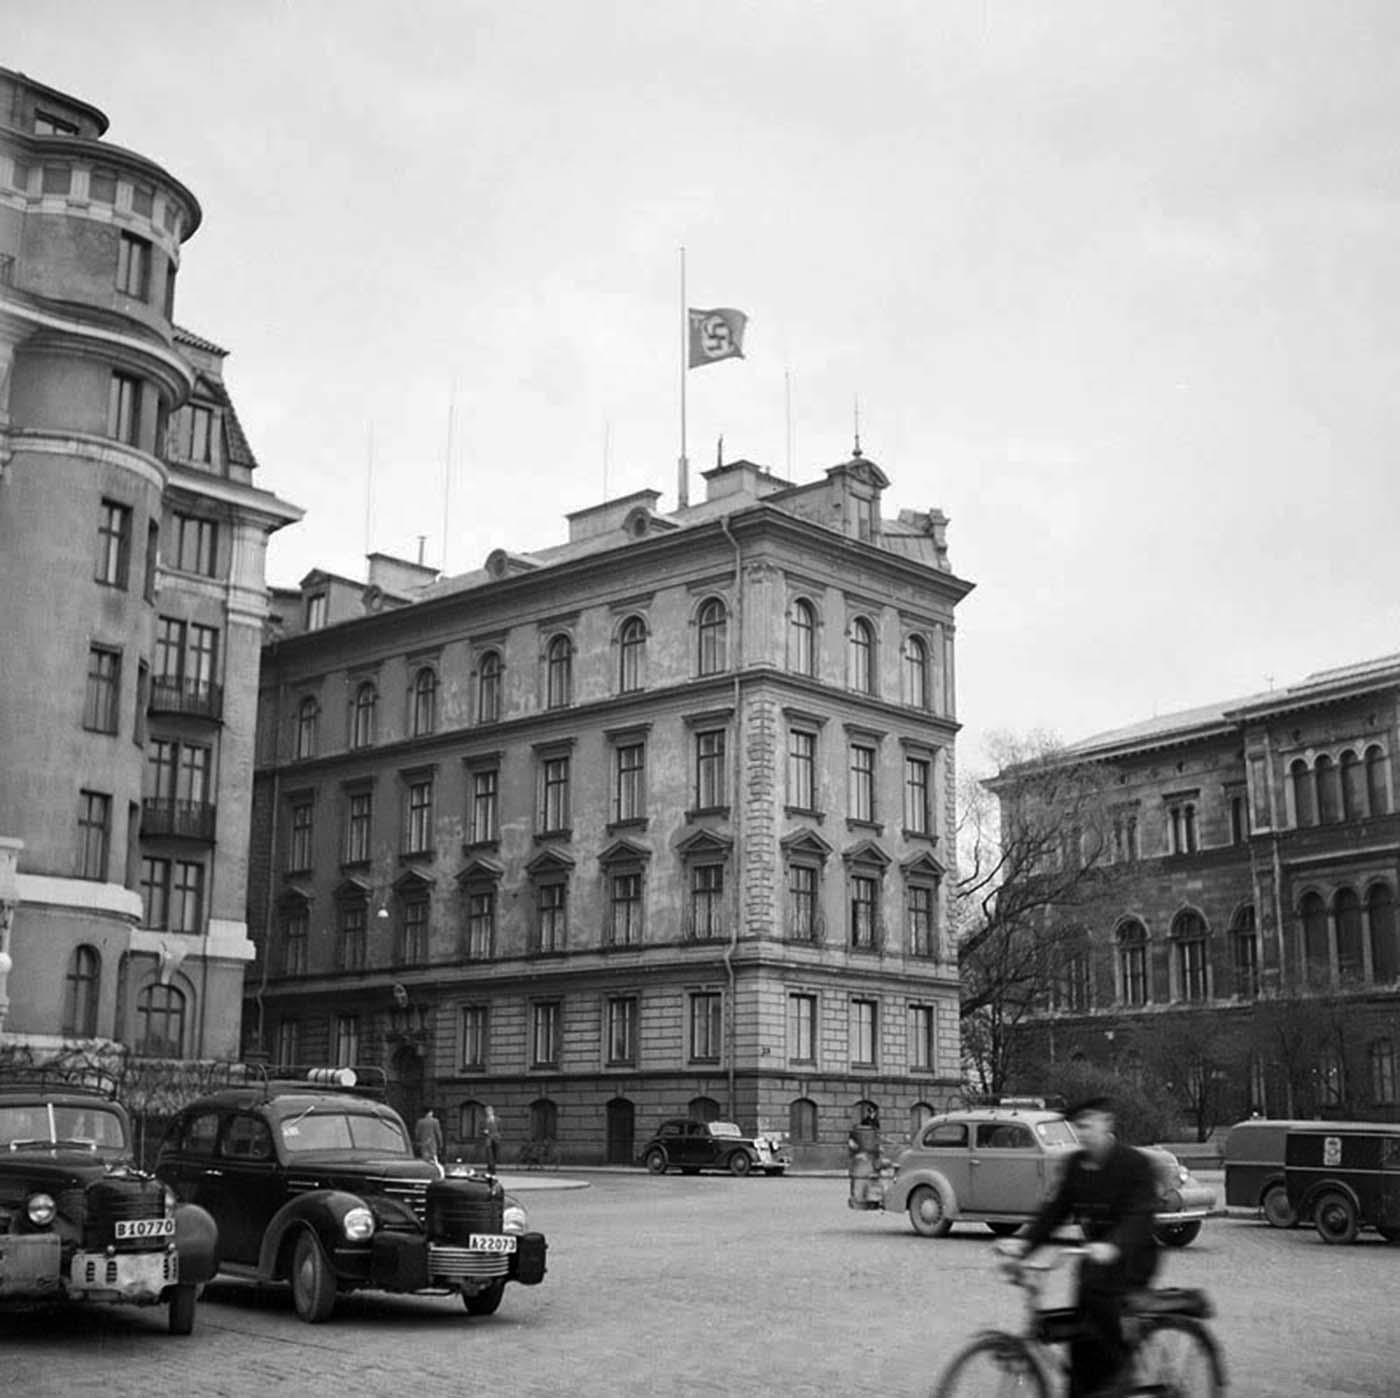 L'ambassade d'allemagne, en Suède, battant pavillon en berne le jour de Hitler est mort, 1945